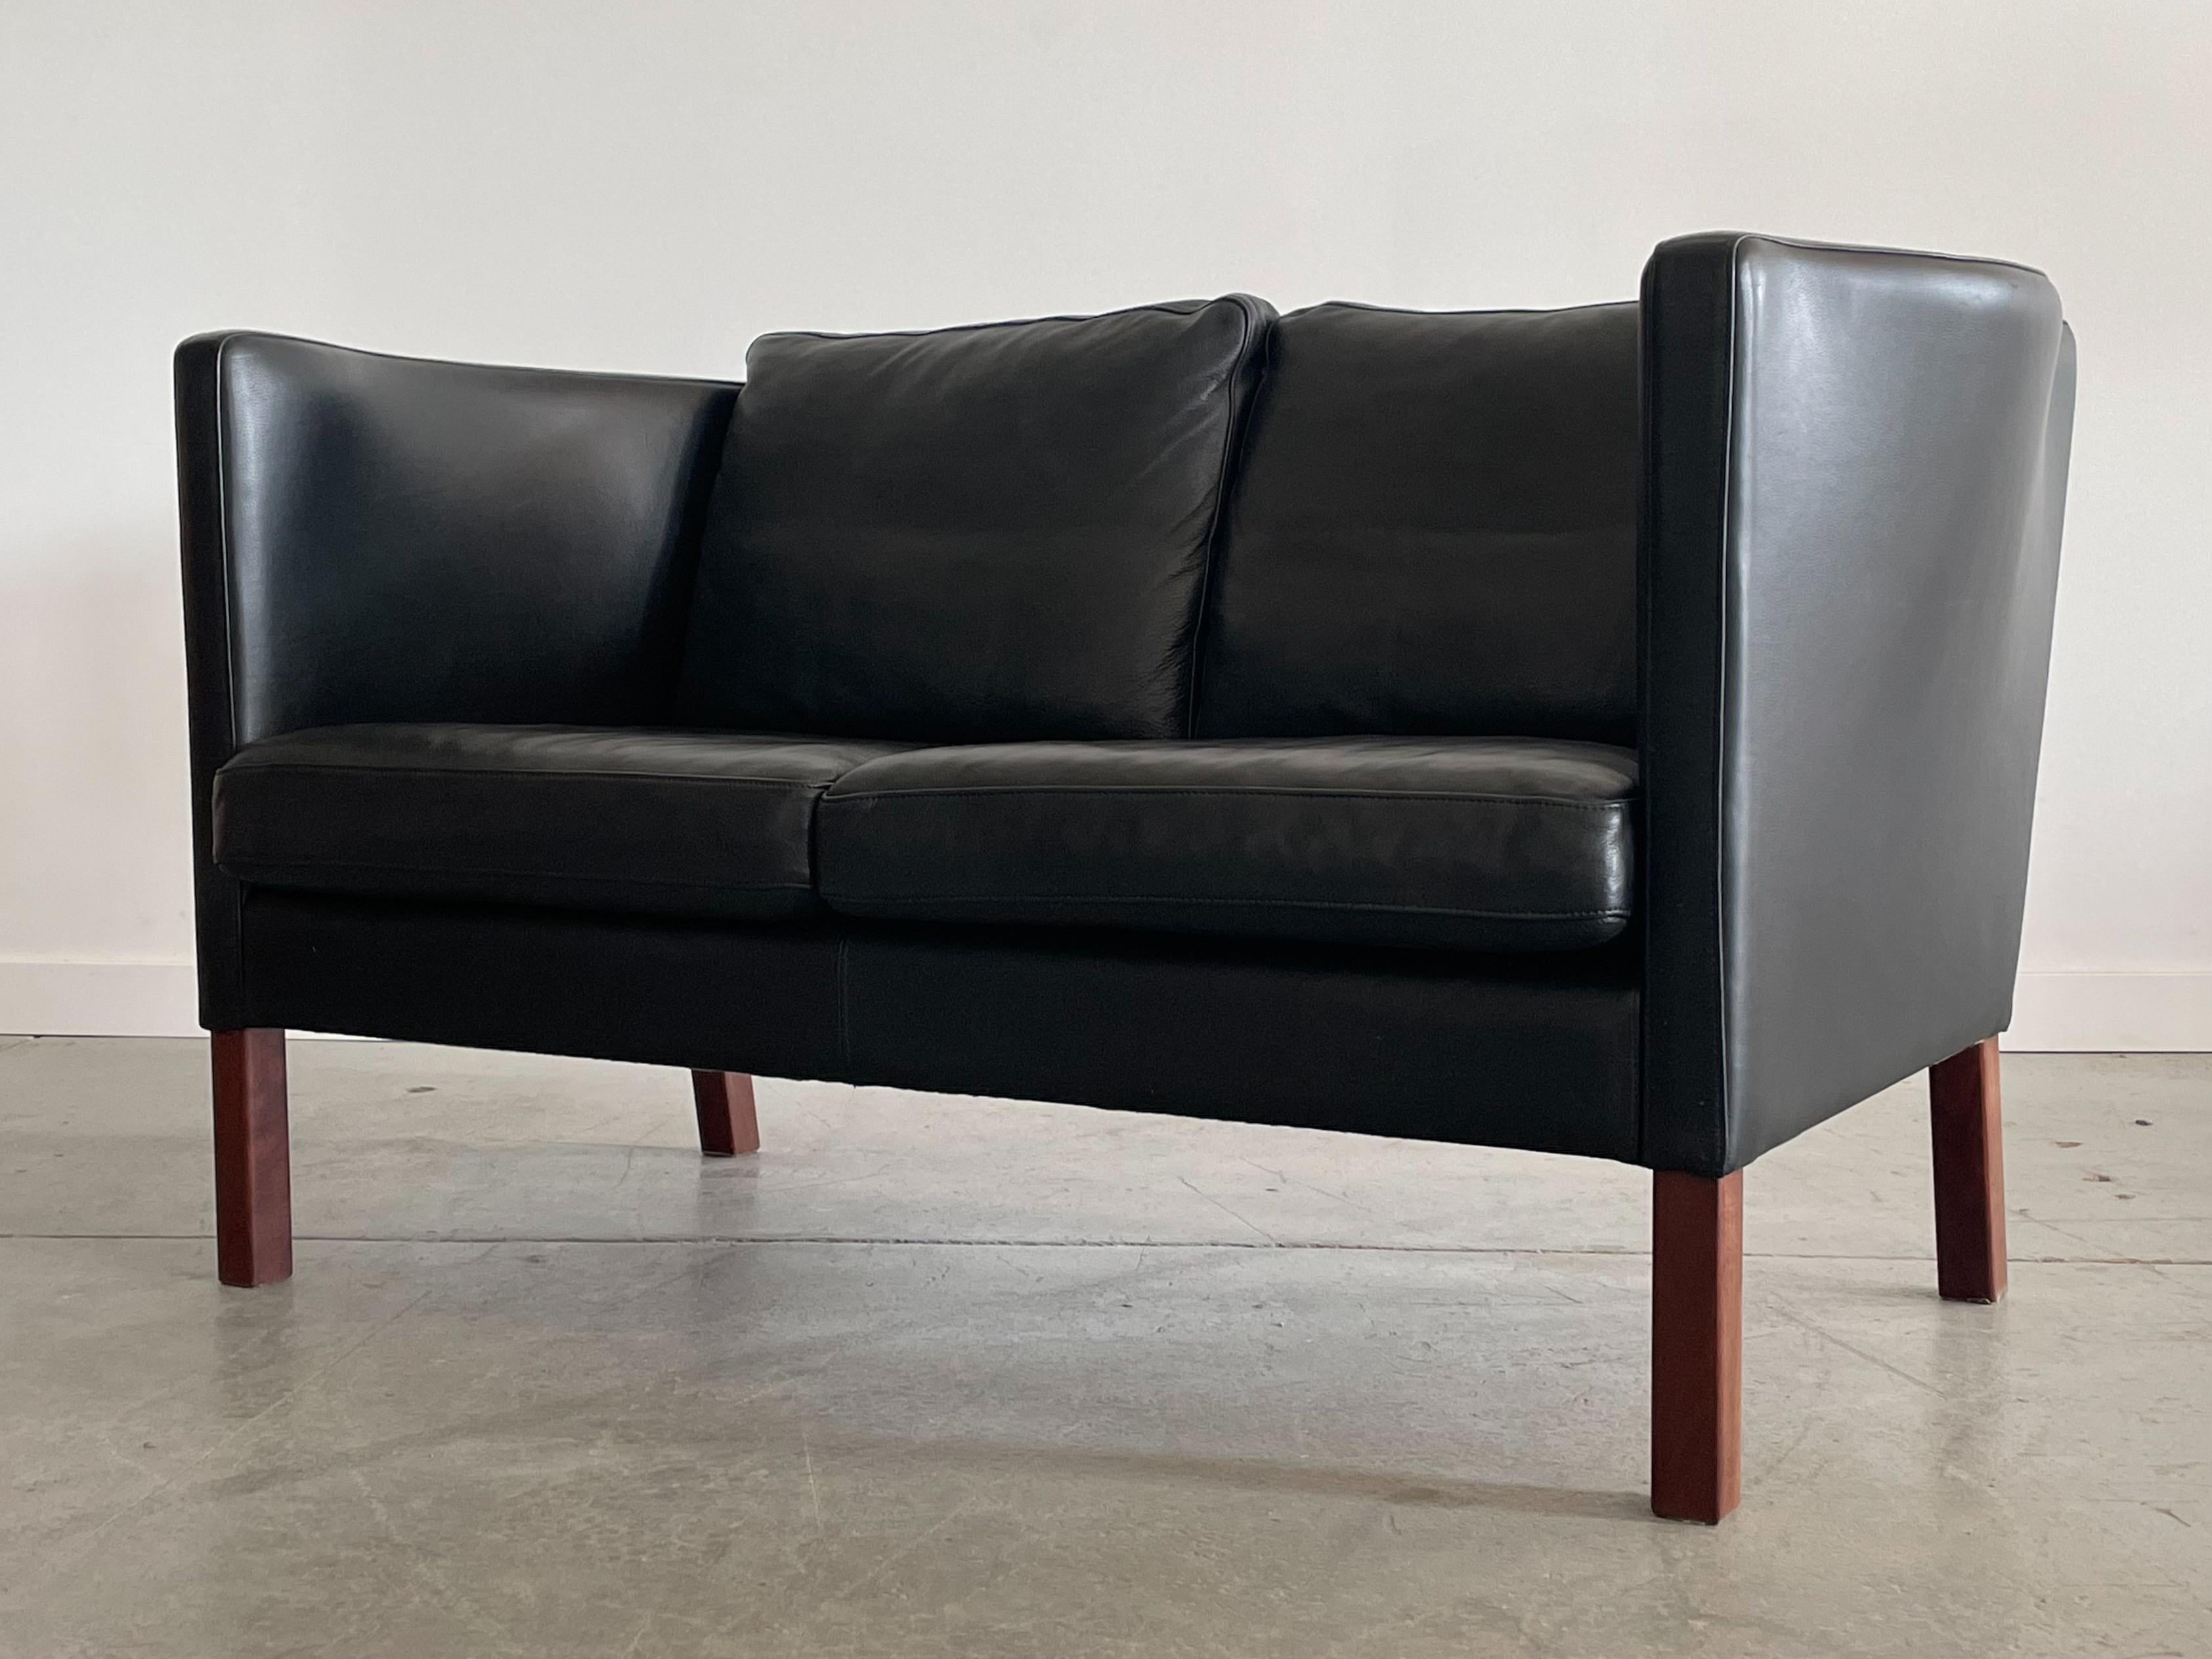 Schönes Zweisitzer-Sofa Modell AV59, entworfen von Arne Vodder für Nielaus, Dänemark. Das schlanke Profil ist typisch für dänisches Design, die Beine sind aus rosenholzgebeizter Buche. Einzigartig geformte Seitenteile bieten einen hohen